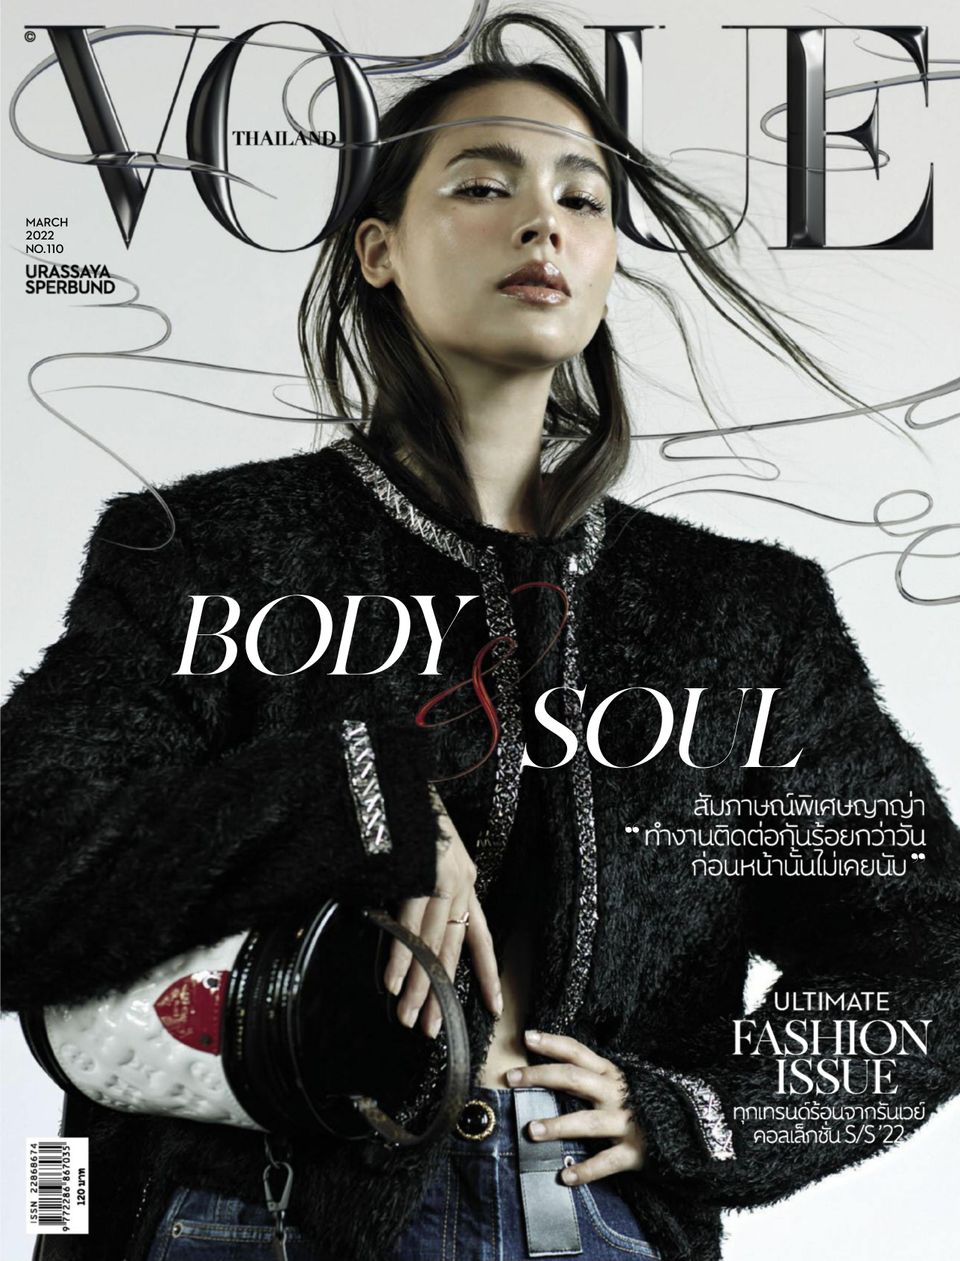 Vogue Thailand March 2022 (Digital) - DiscountMags.com